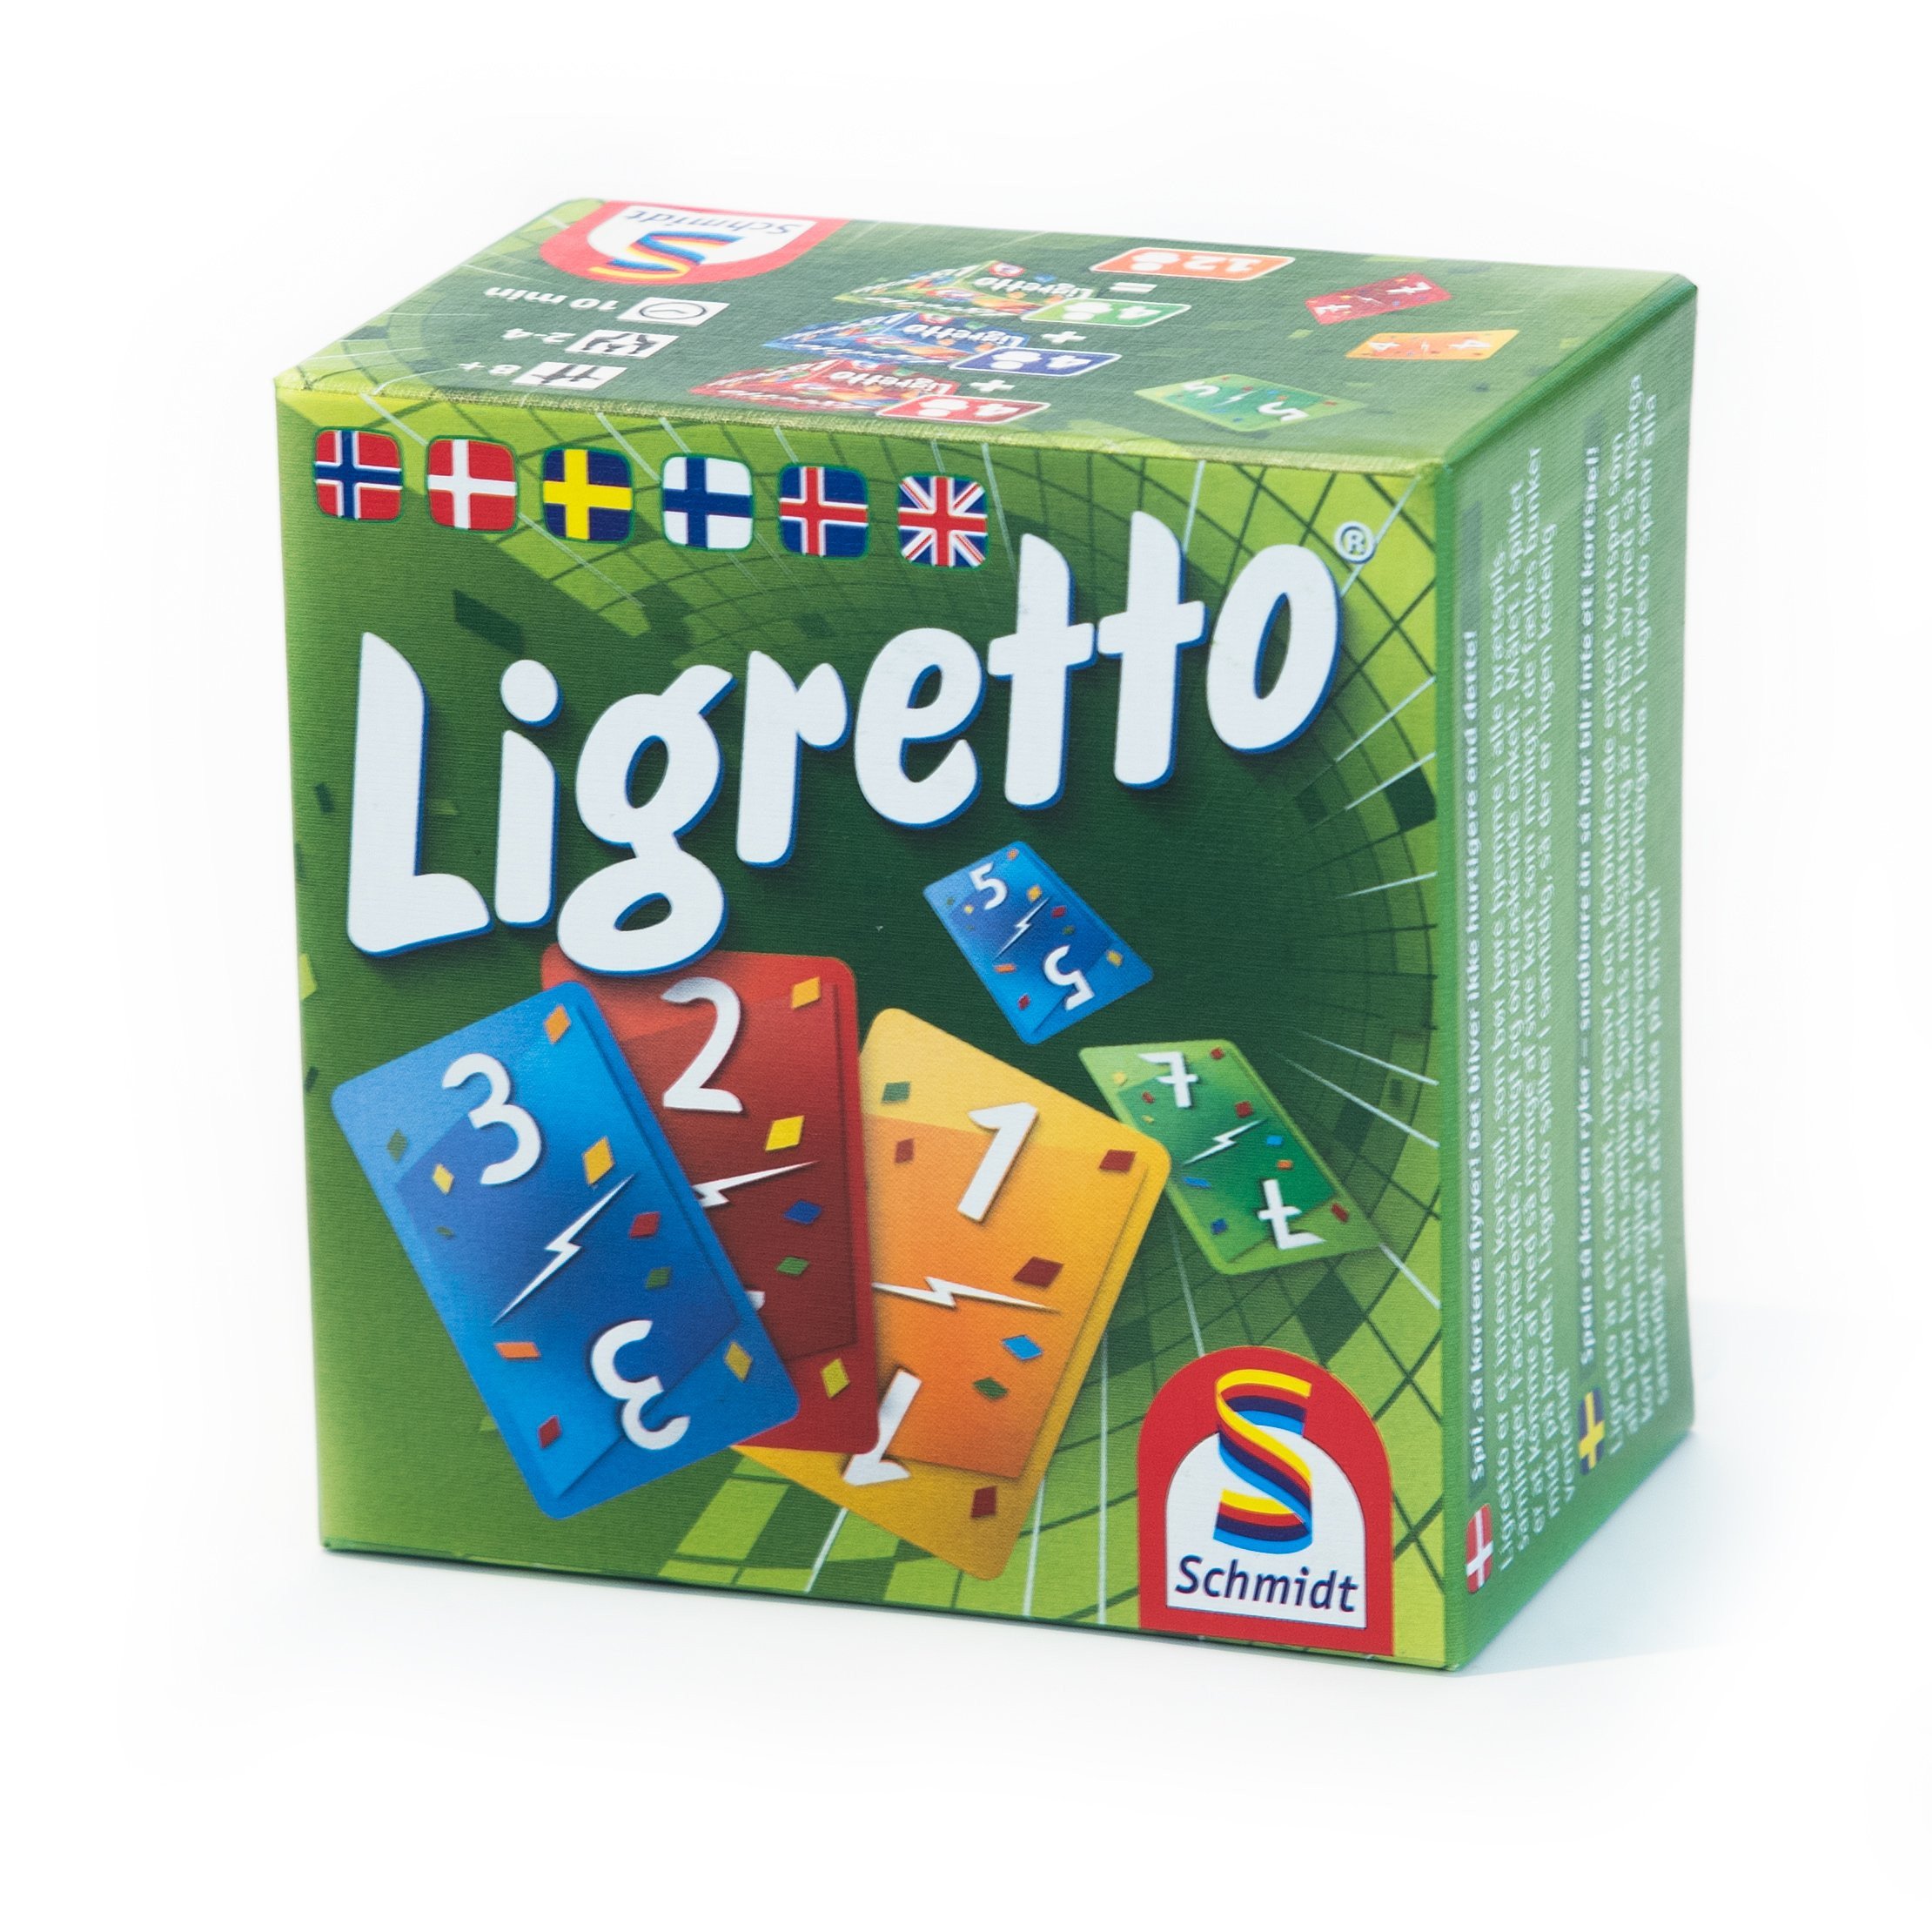 Ligretto - Green (953) - Leker